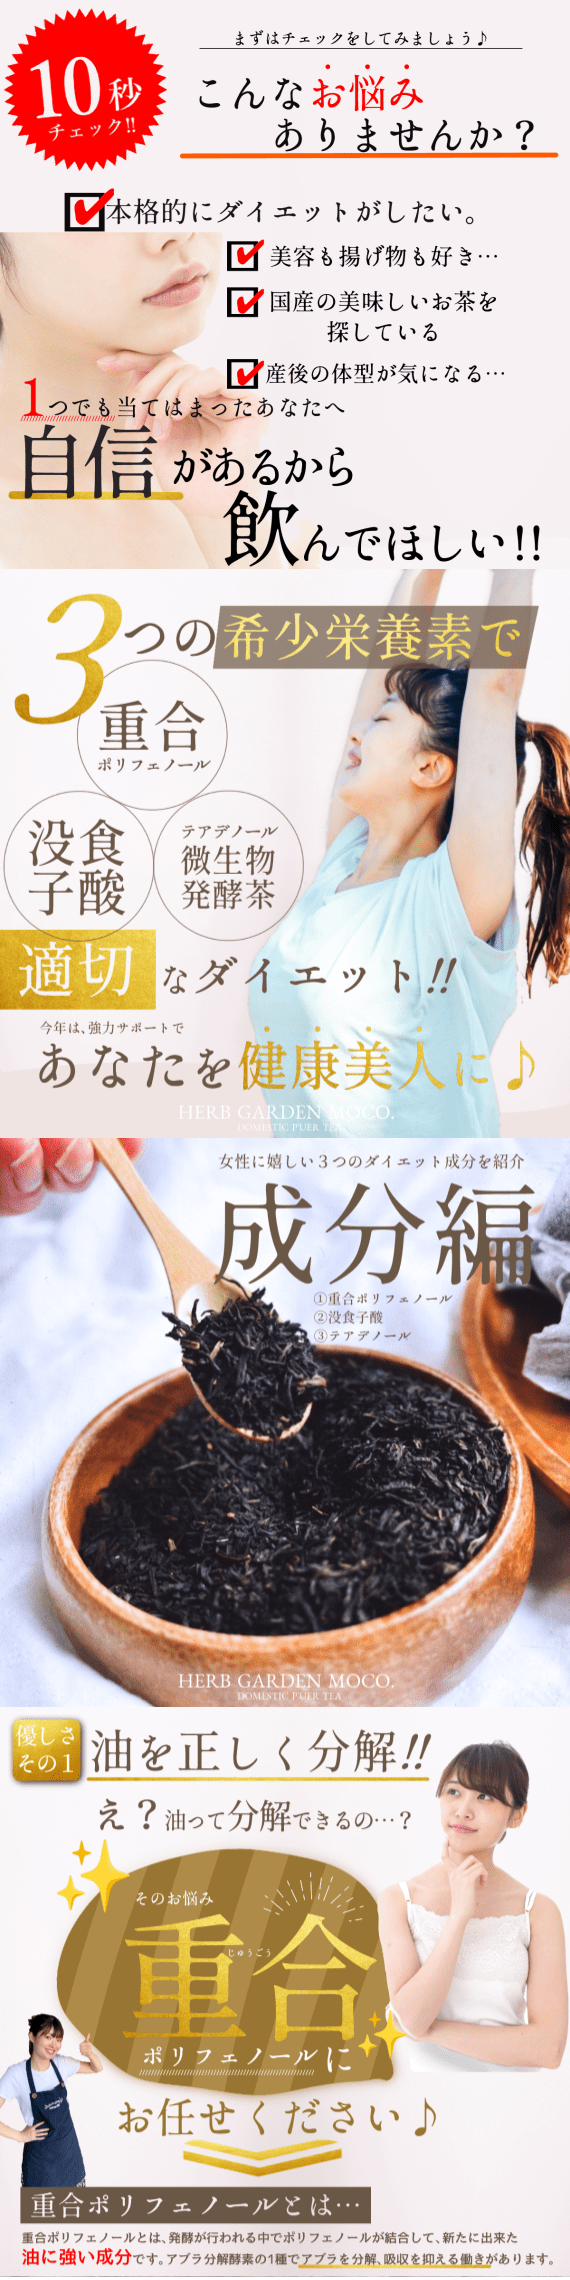 【お徳用】   国産プーアール茶・健康美人の習慣スリム茶・送料無料